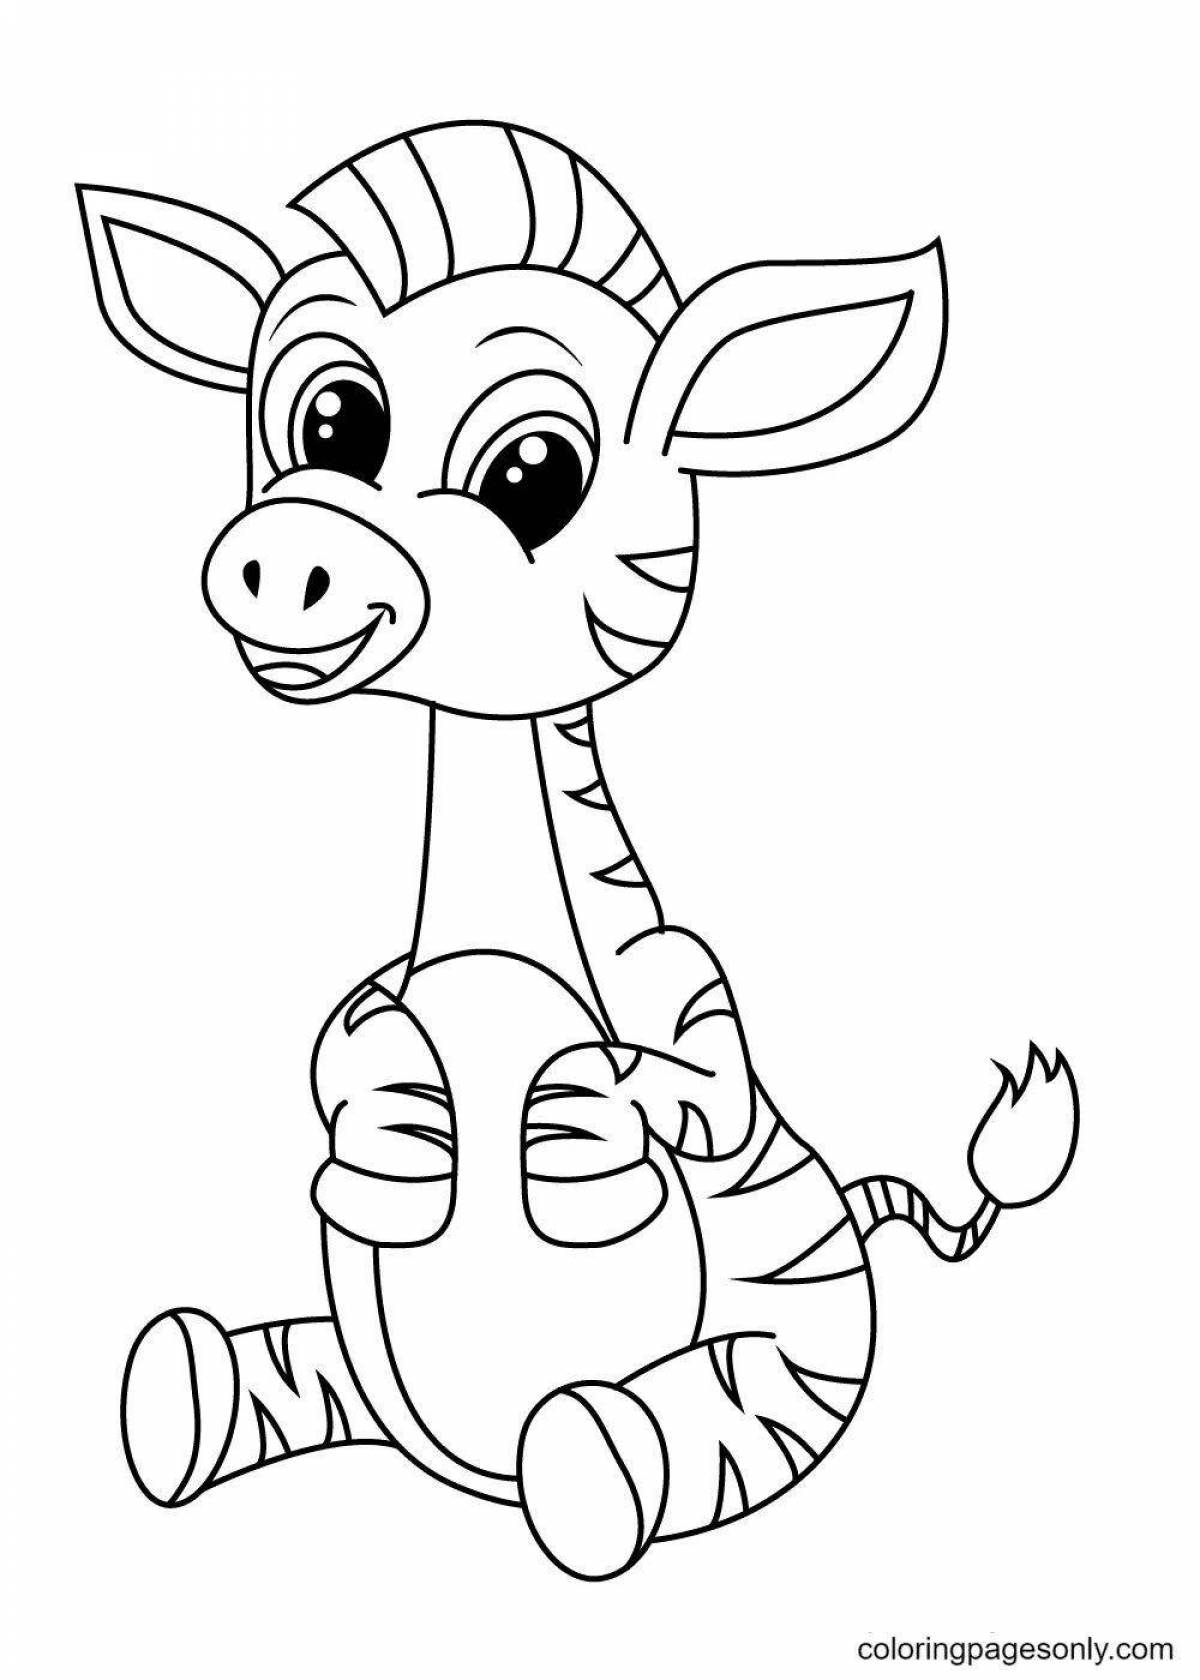 Удивительная раскраска зебра для малышей 3-4 лет